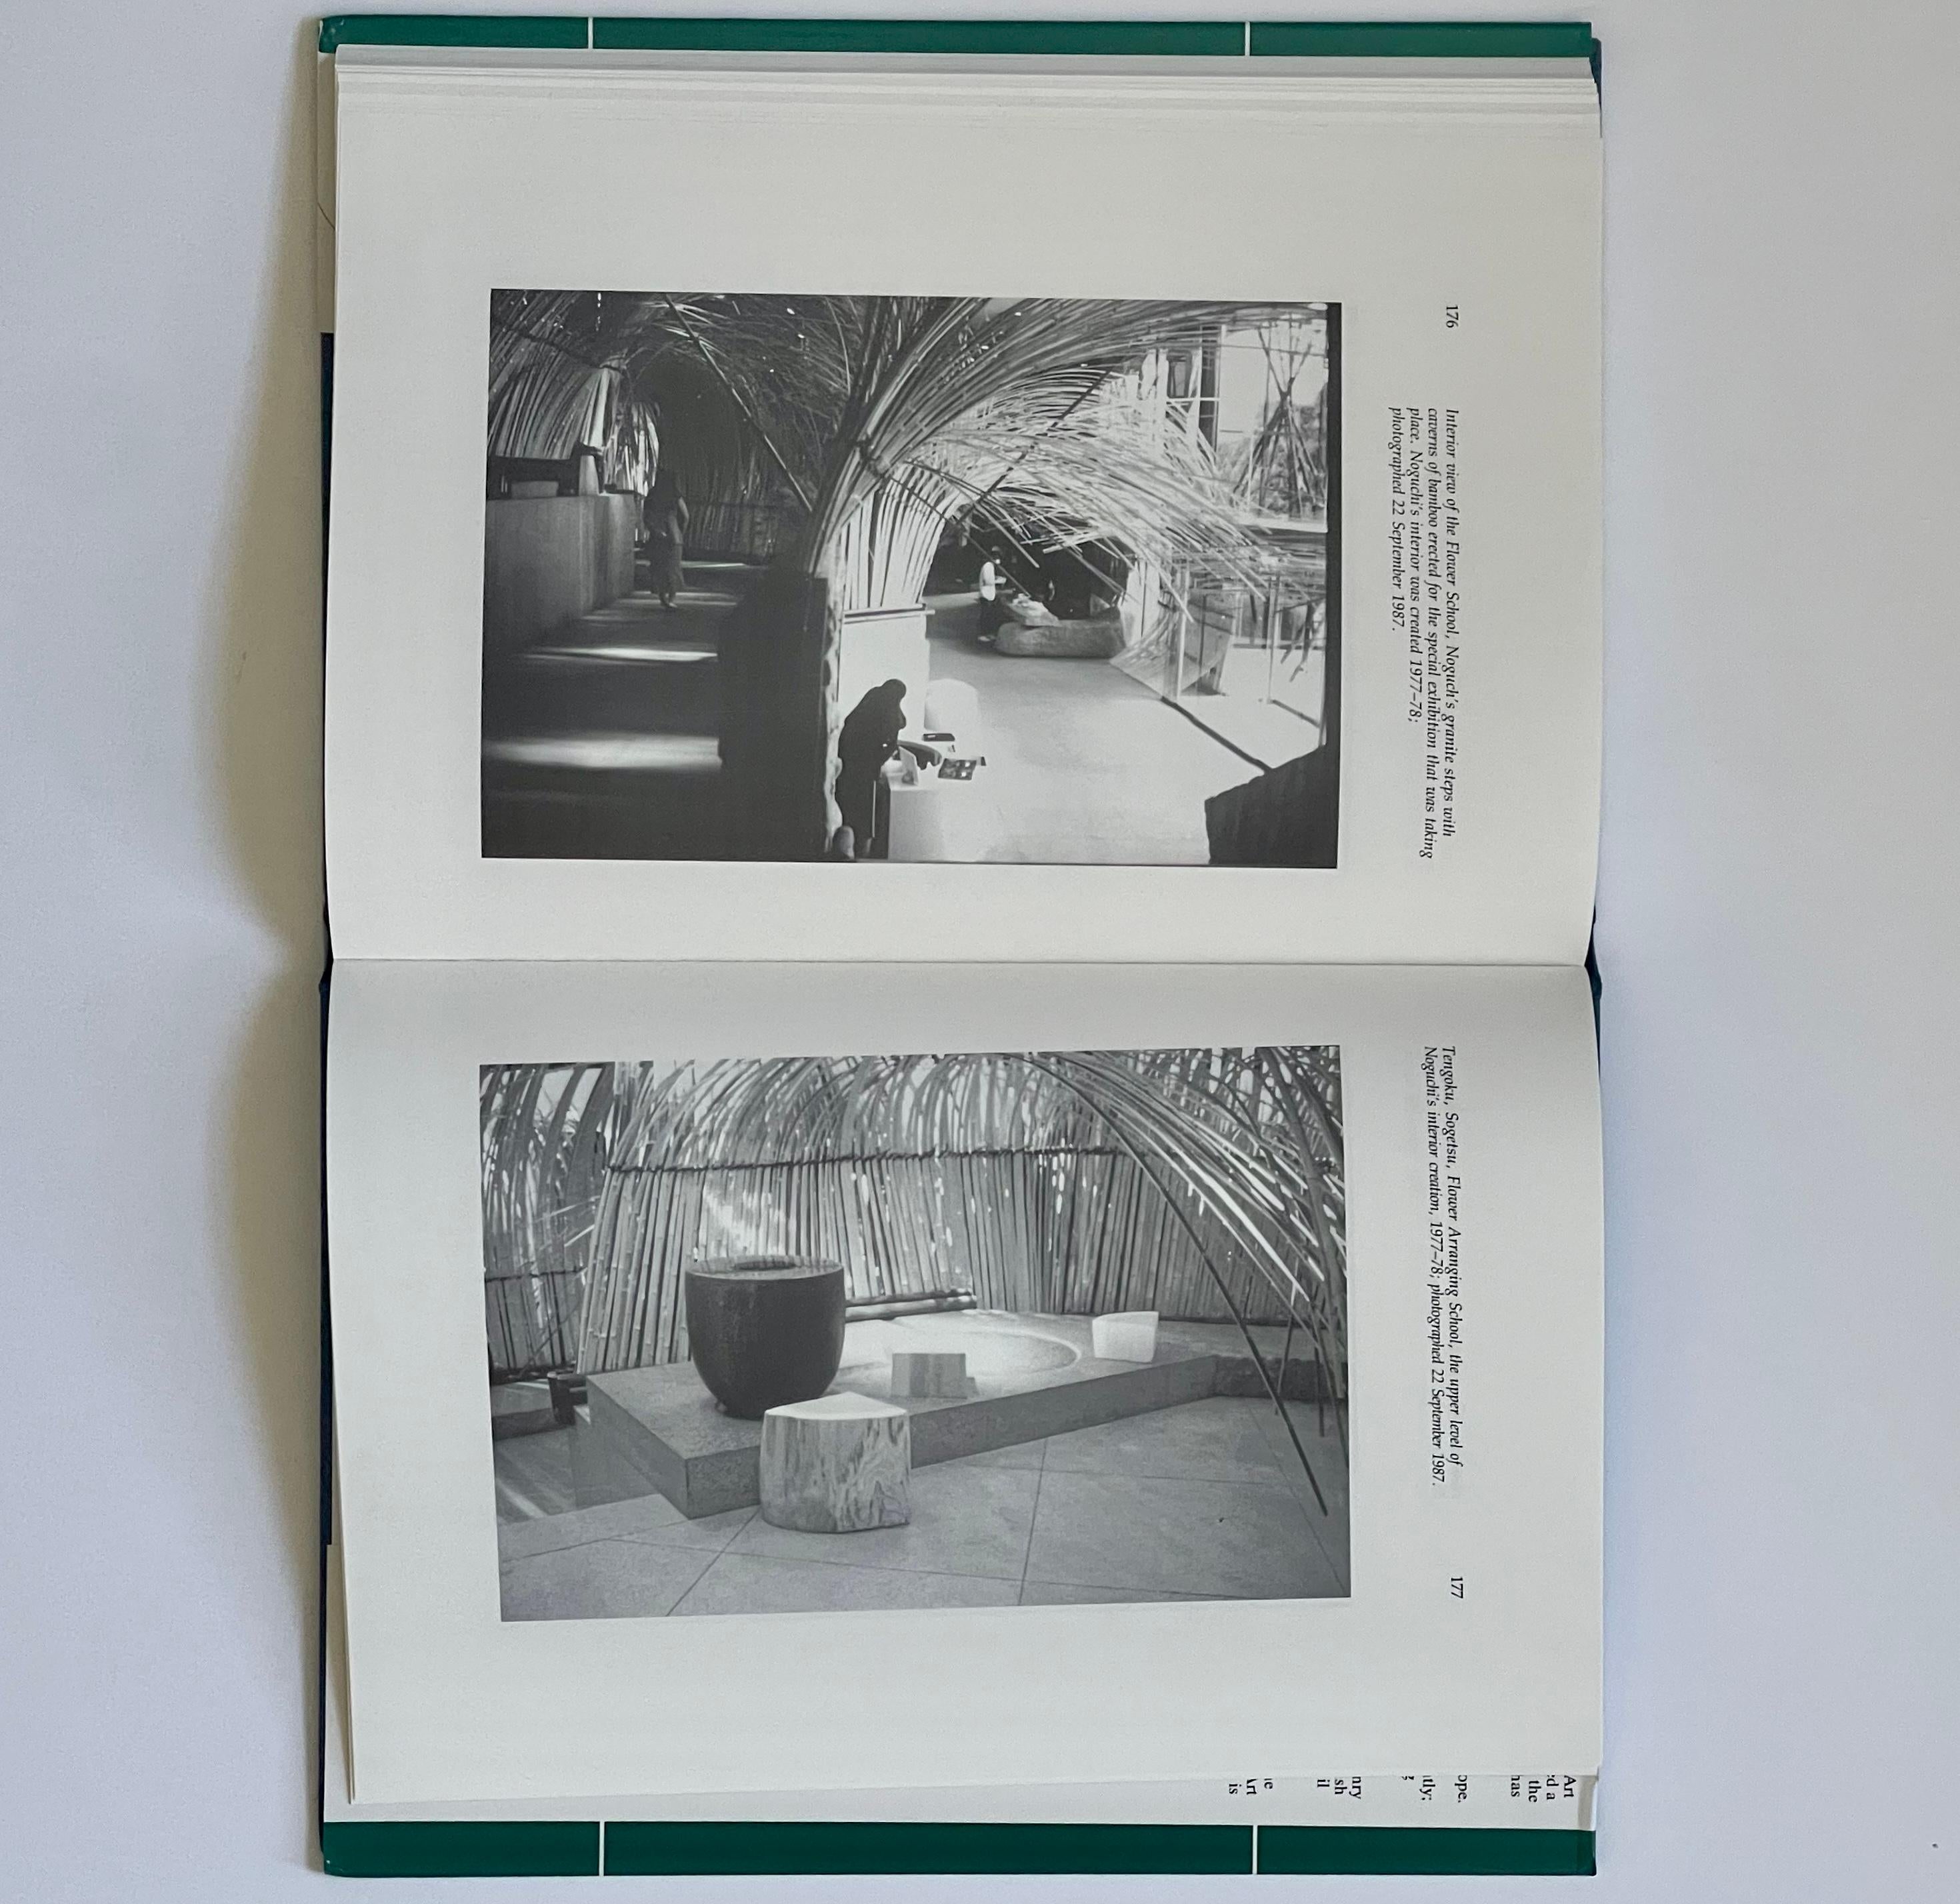 Britannique Isamu Noguchi : Aspects de la pratique d'un sculpteur -Tim Threlfall- 1ère édition, 1992